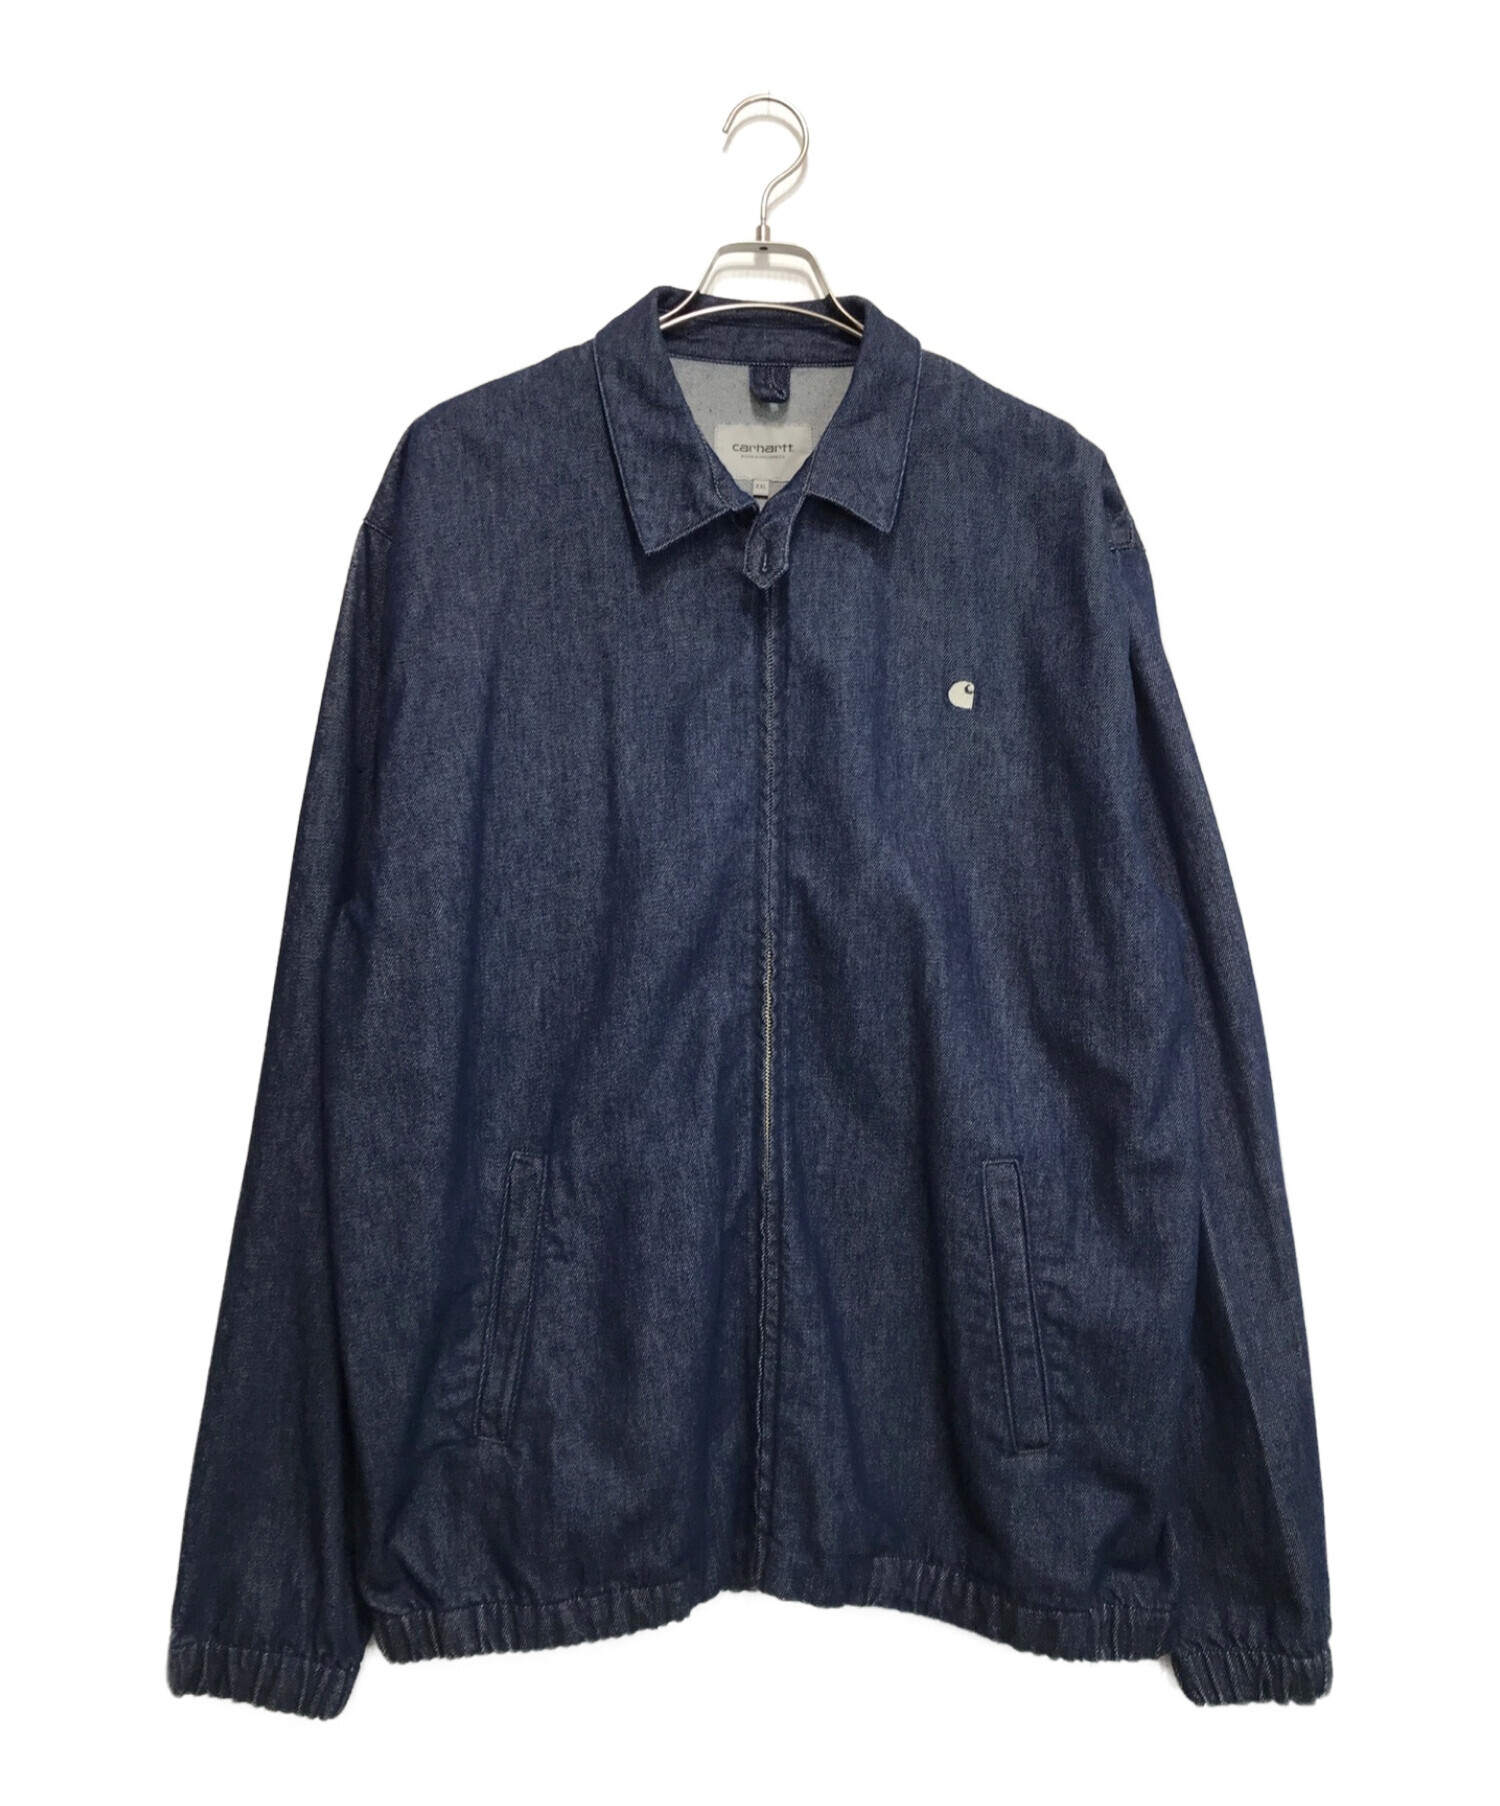 carhartt wip デニムmadison jacket タグ付き - Gジャン/デニムジャケット